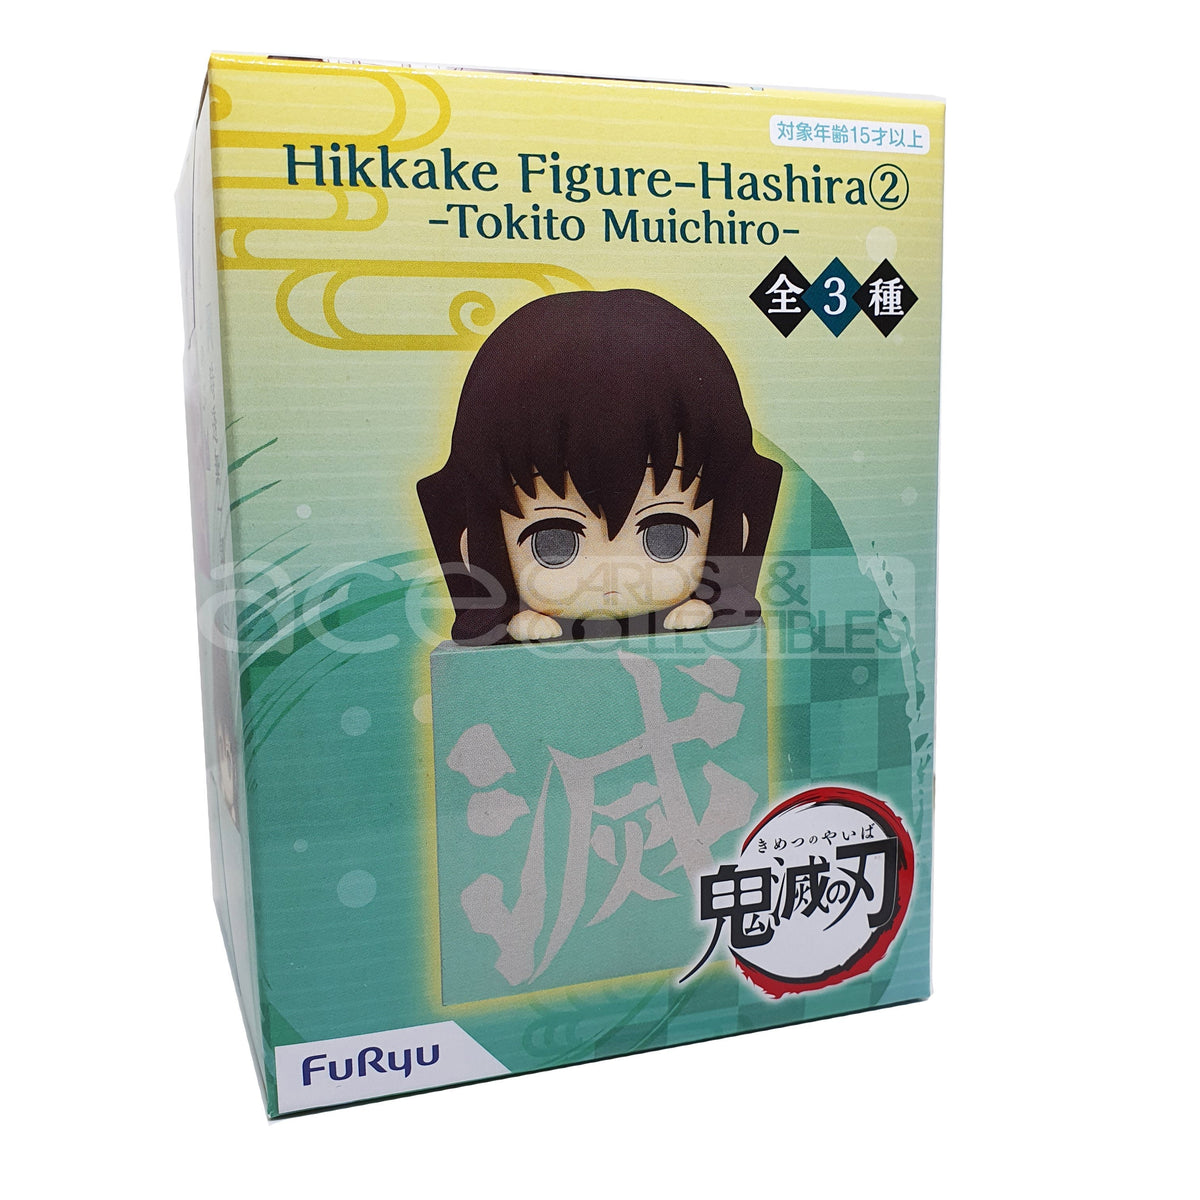 Demon Slayer: Kimetsu no Yaiba Hikkake Figure Hashira 2nd Set (Reissue)-Complete Set of 3 (Muichiro, Shinobu &amp; Sanemi)-FuRyu-Ace Cards &amp; Collectibles